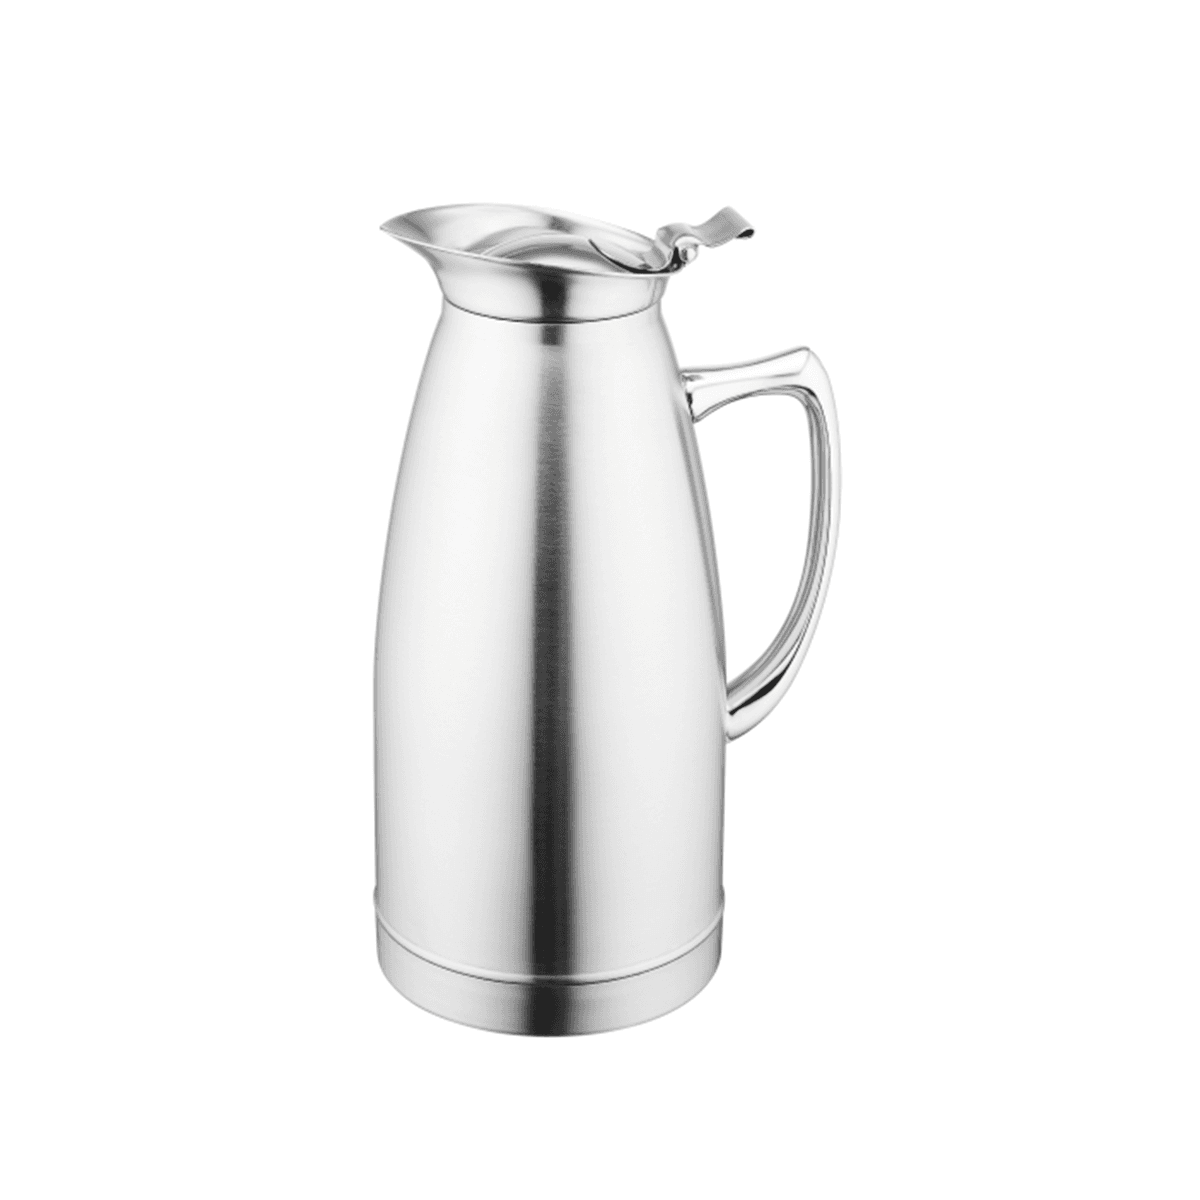 ترمس شاي وقهوة حافظ للحرارة 1 لتر ستانلس ستيل فضي سانكس Sunnex Stainless Steel Vacuum Beverage Pot